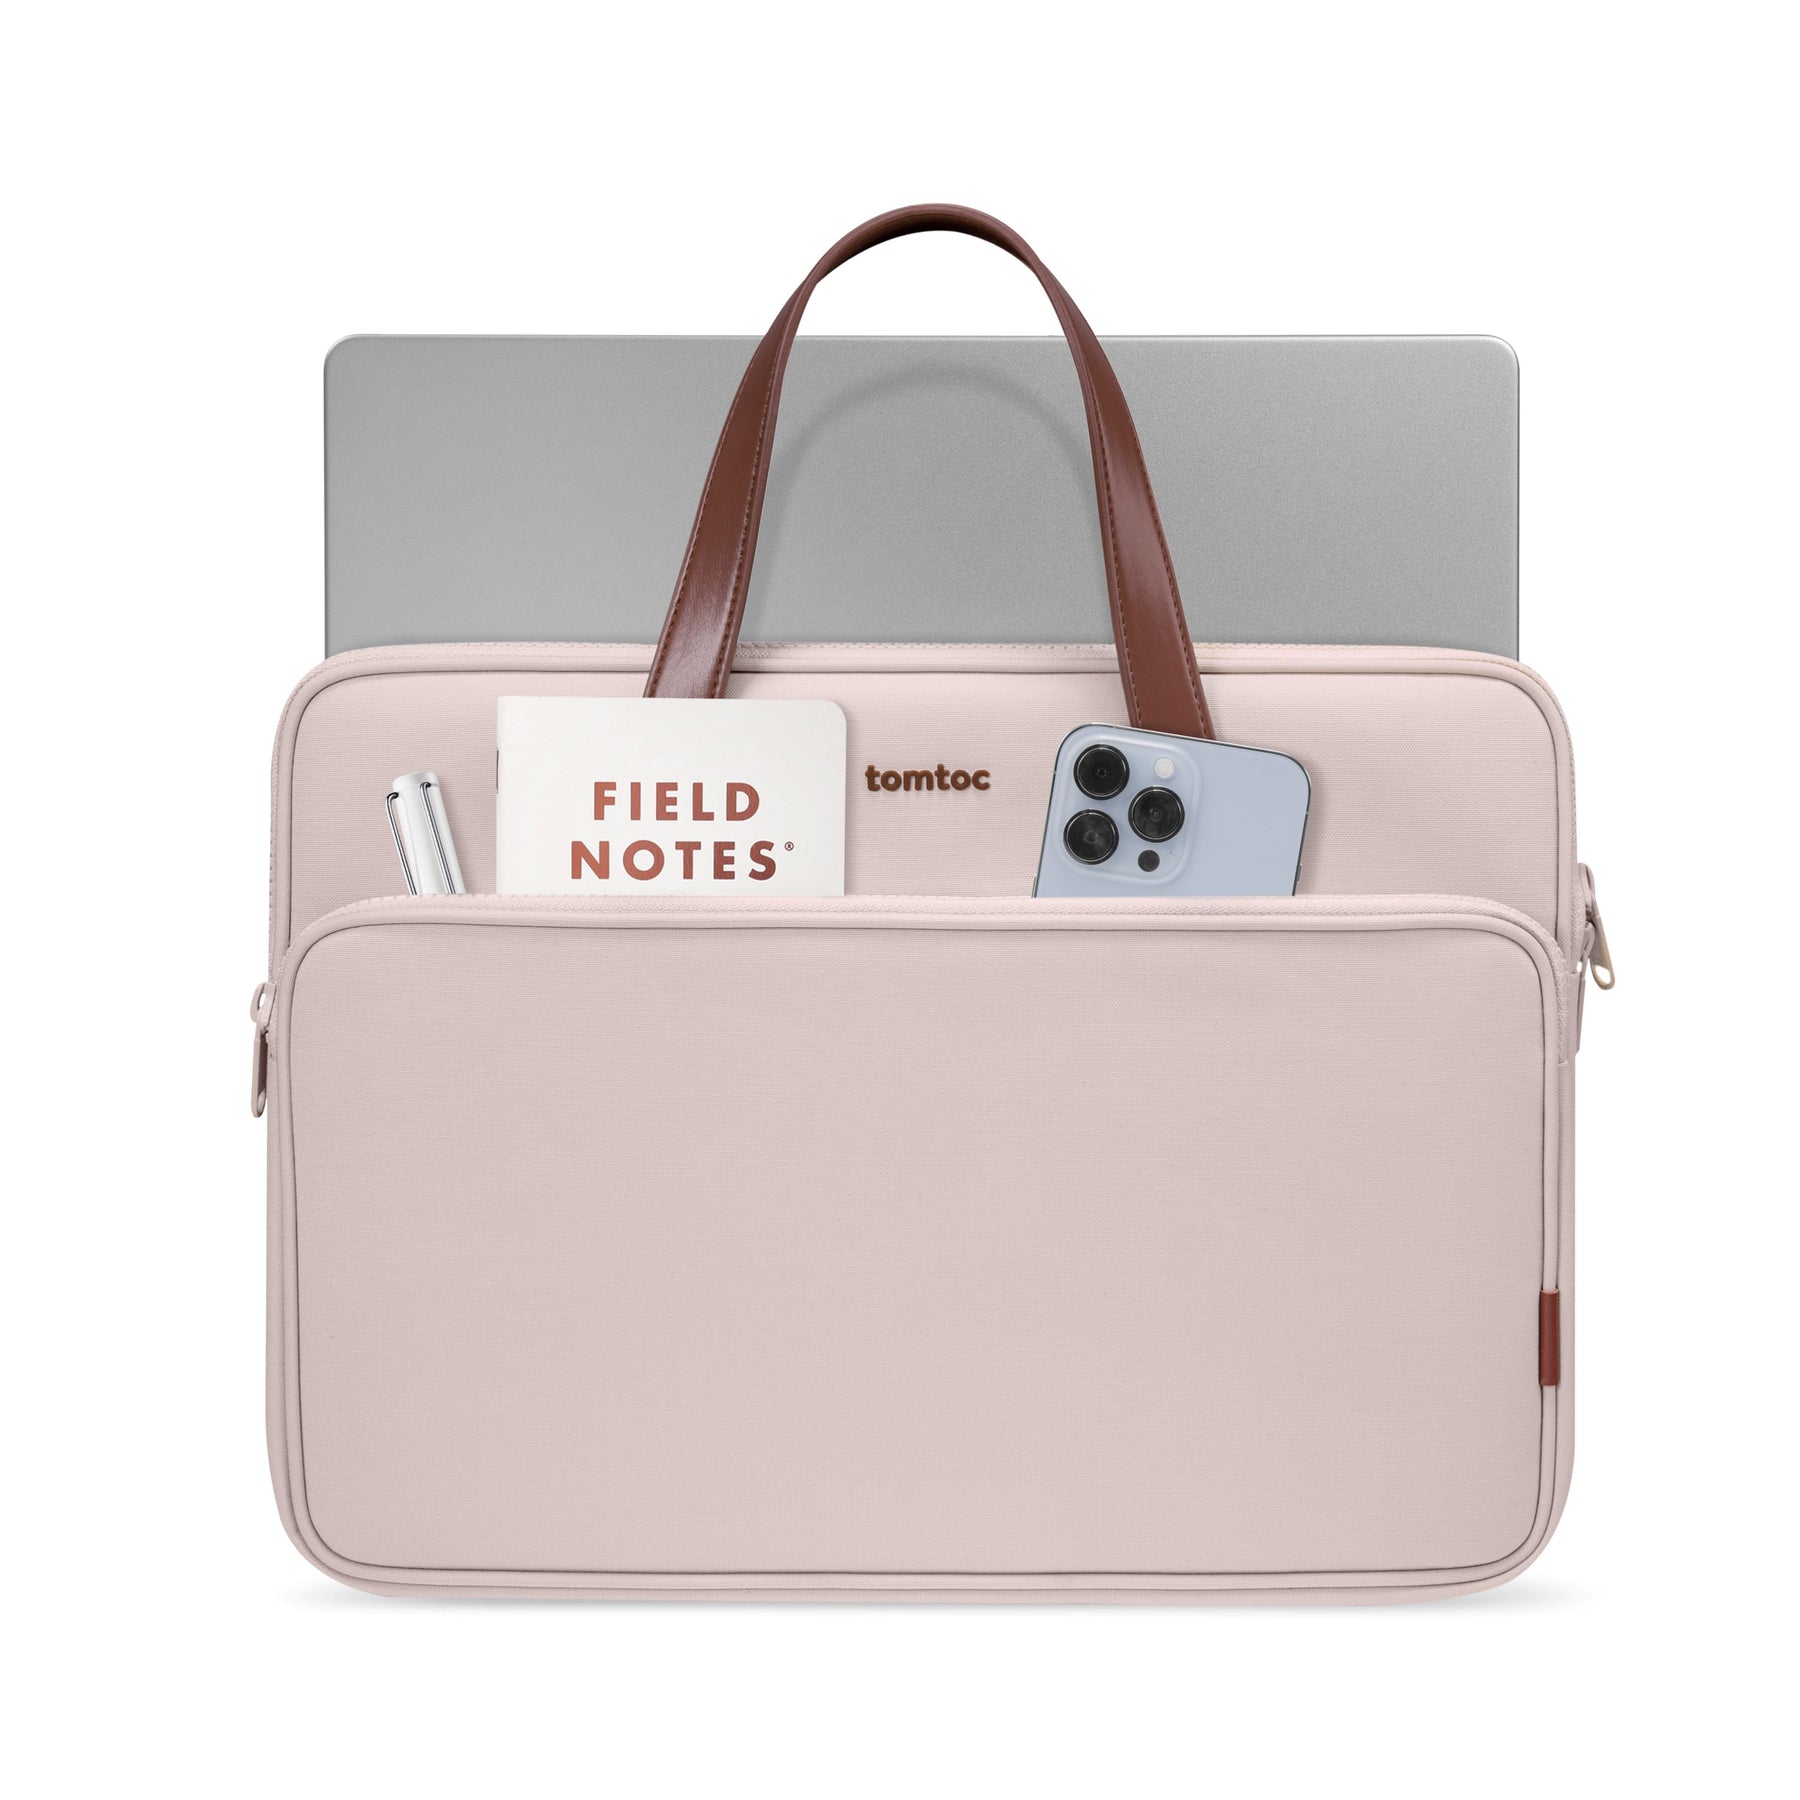 Versatile-A11 Laptop Handbag Blush Pink 13.5-inch